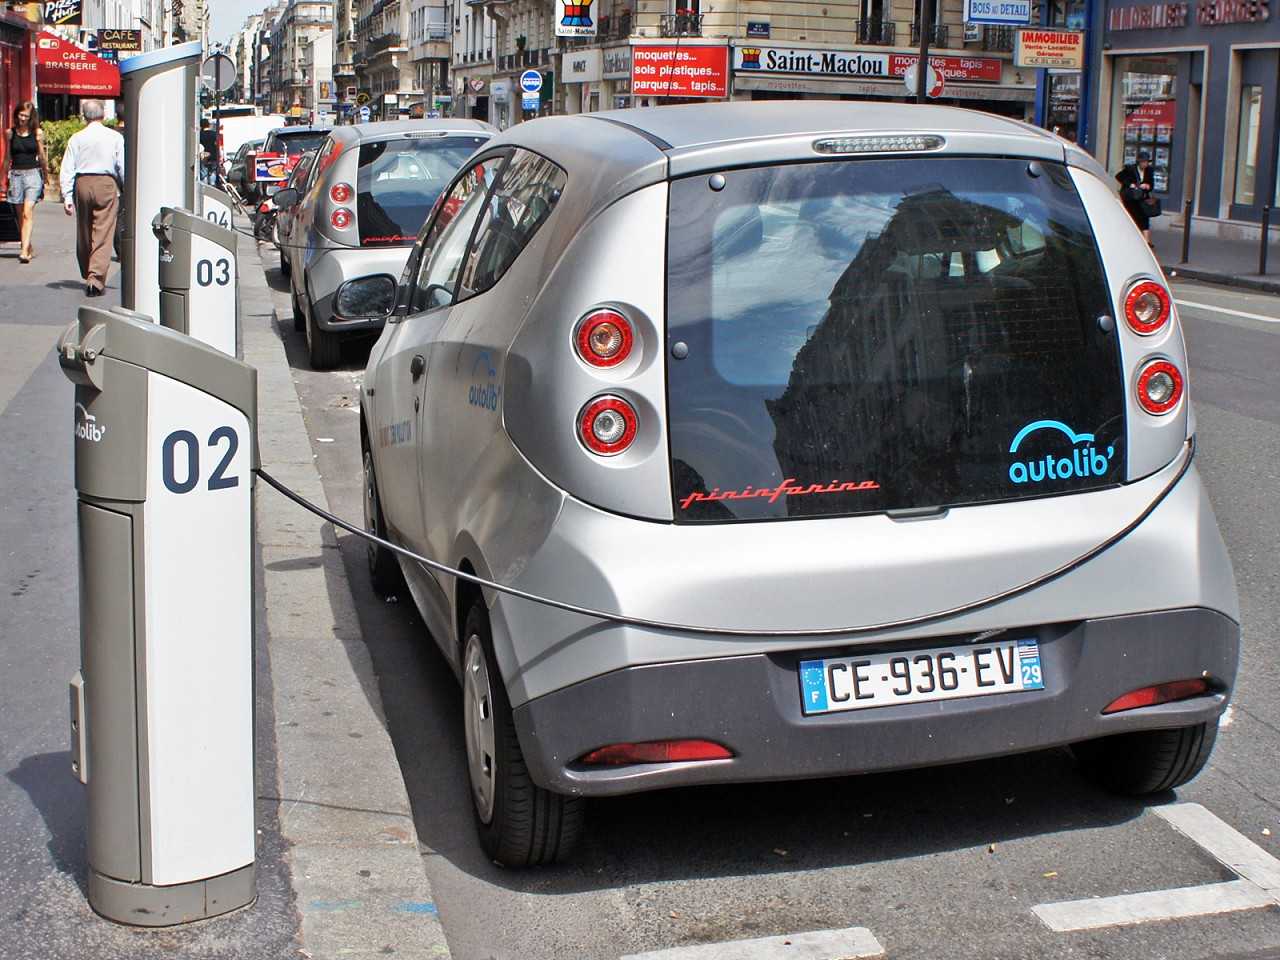 Sistema de compartilhamento de carros de So Paulo deve ser parecido com o Autolib, de Paris